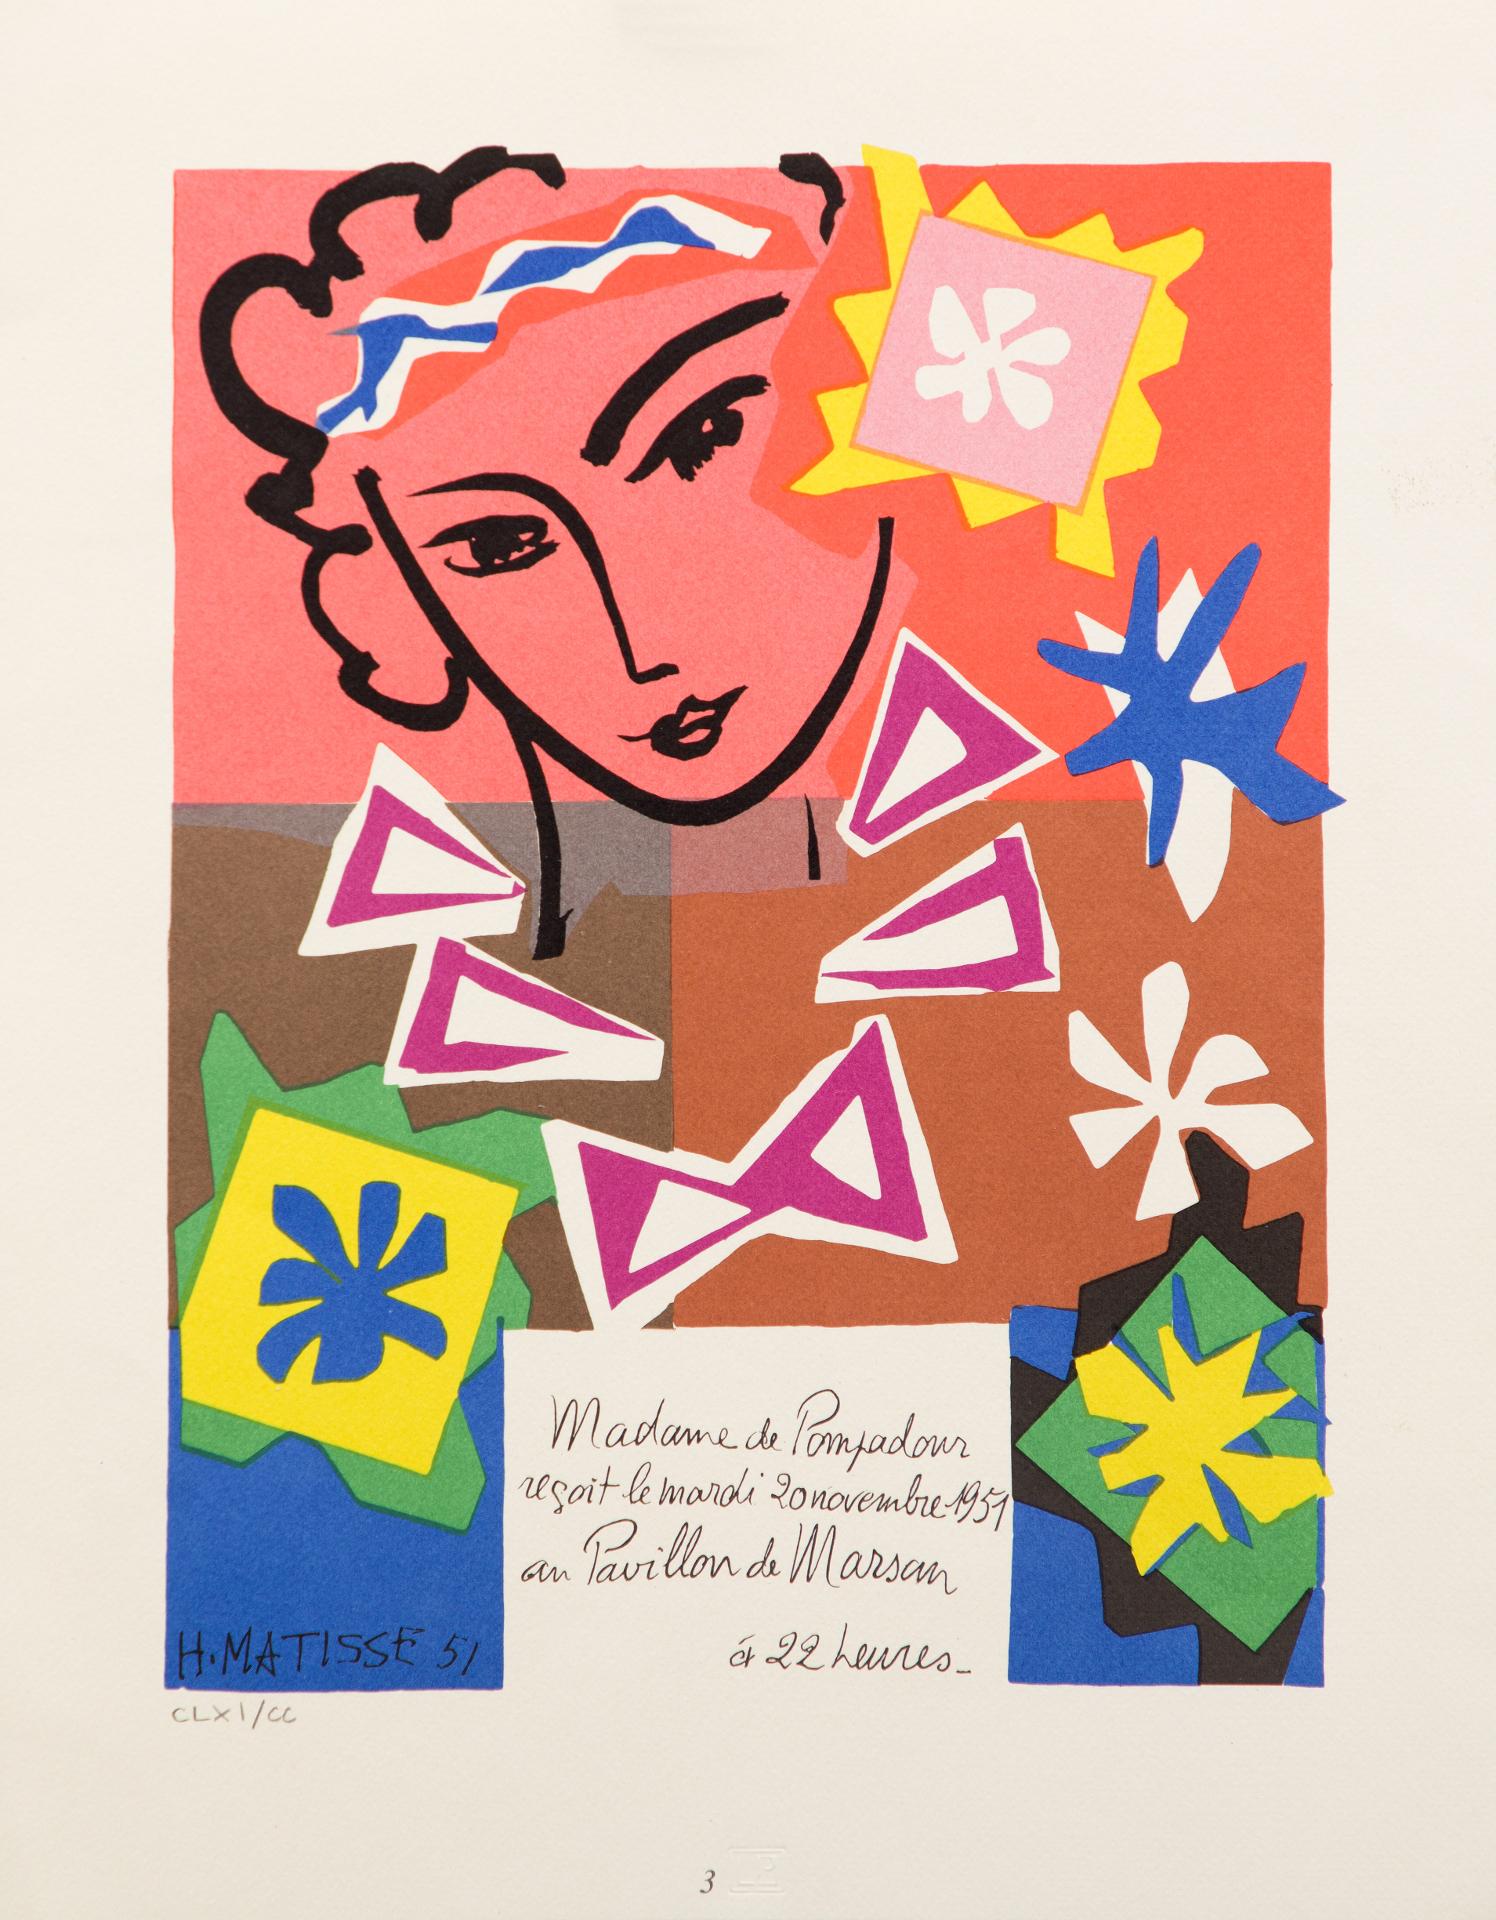 Henri Matisse (1869-1954) - Affiche / Poster Madame de Pompadour, Pavillon de Marsan, 1951